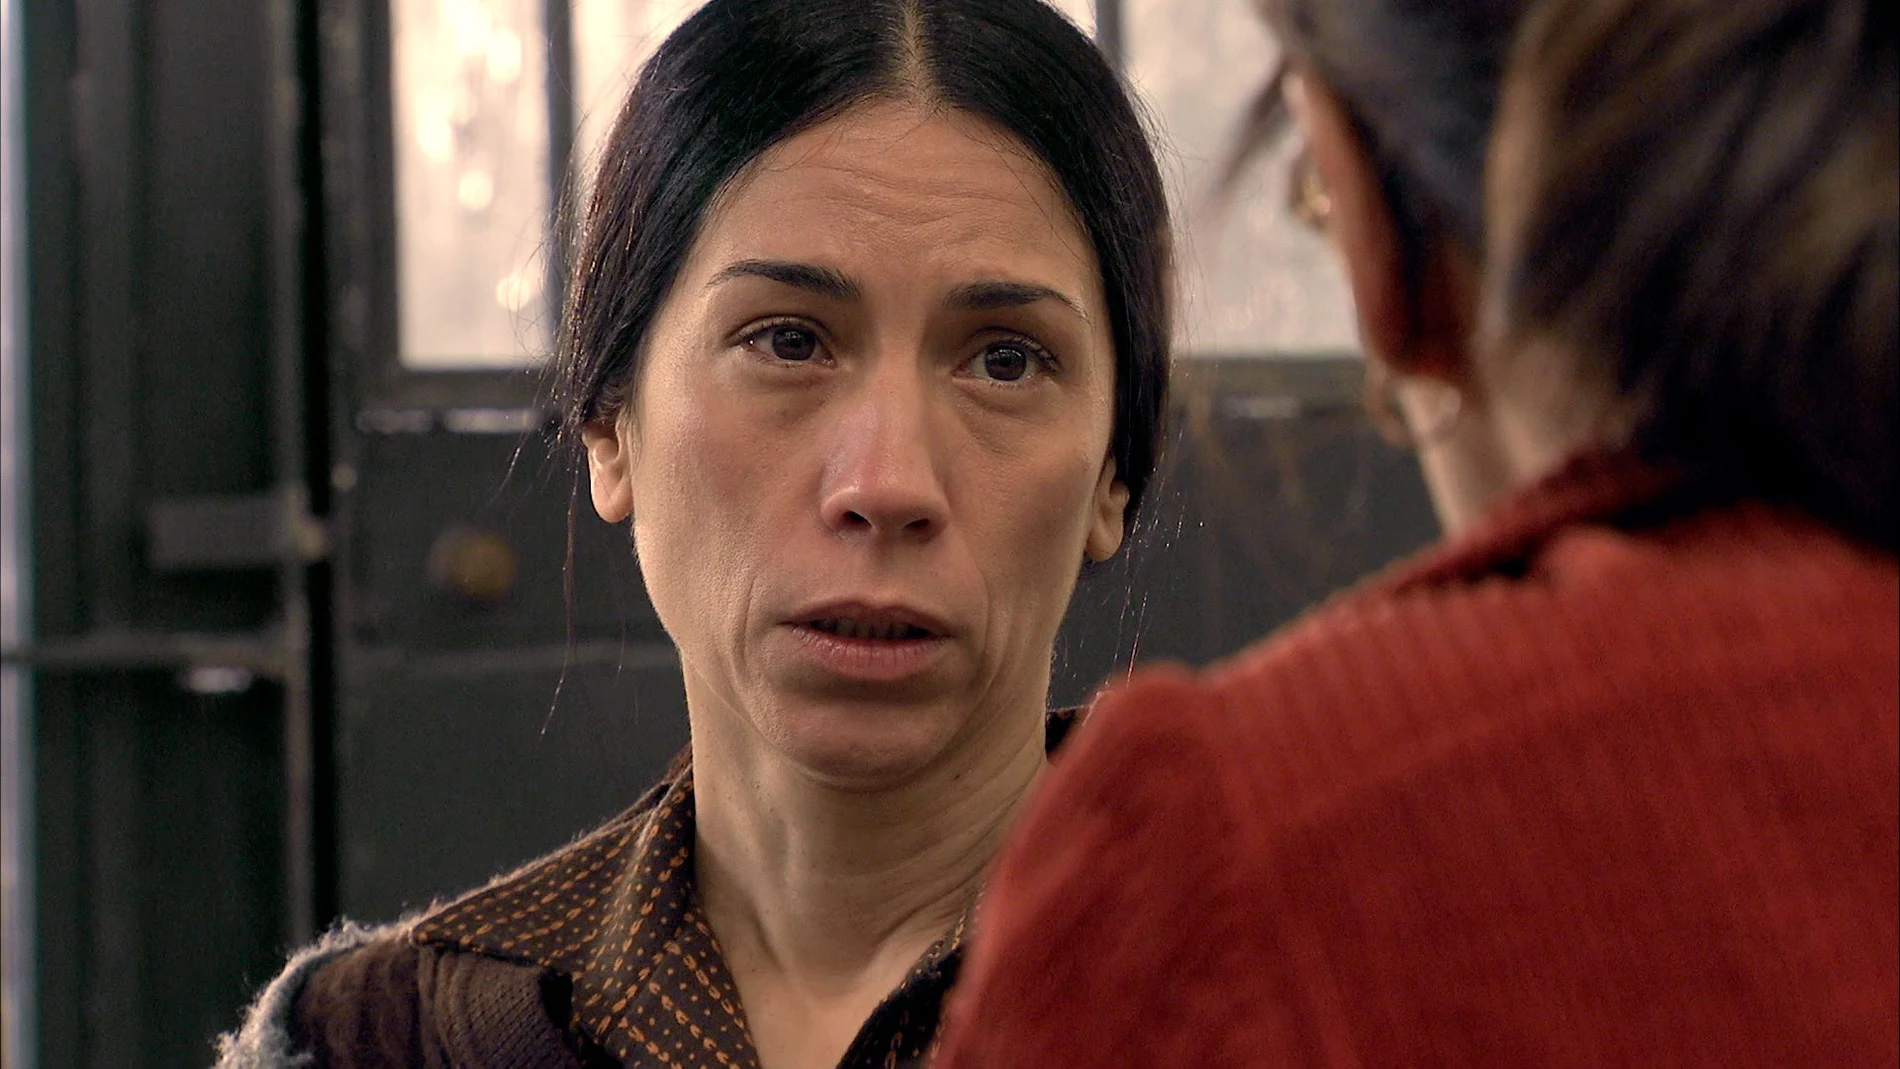 Manolita recibe a Cristina, decidida a ir a por todas: “Vamos a ir con la verdad hasta el final”